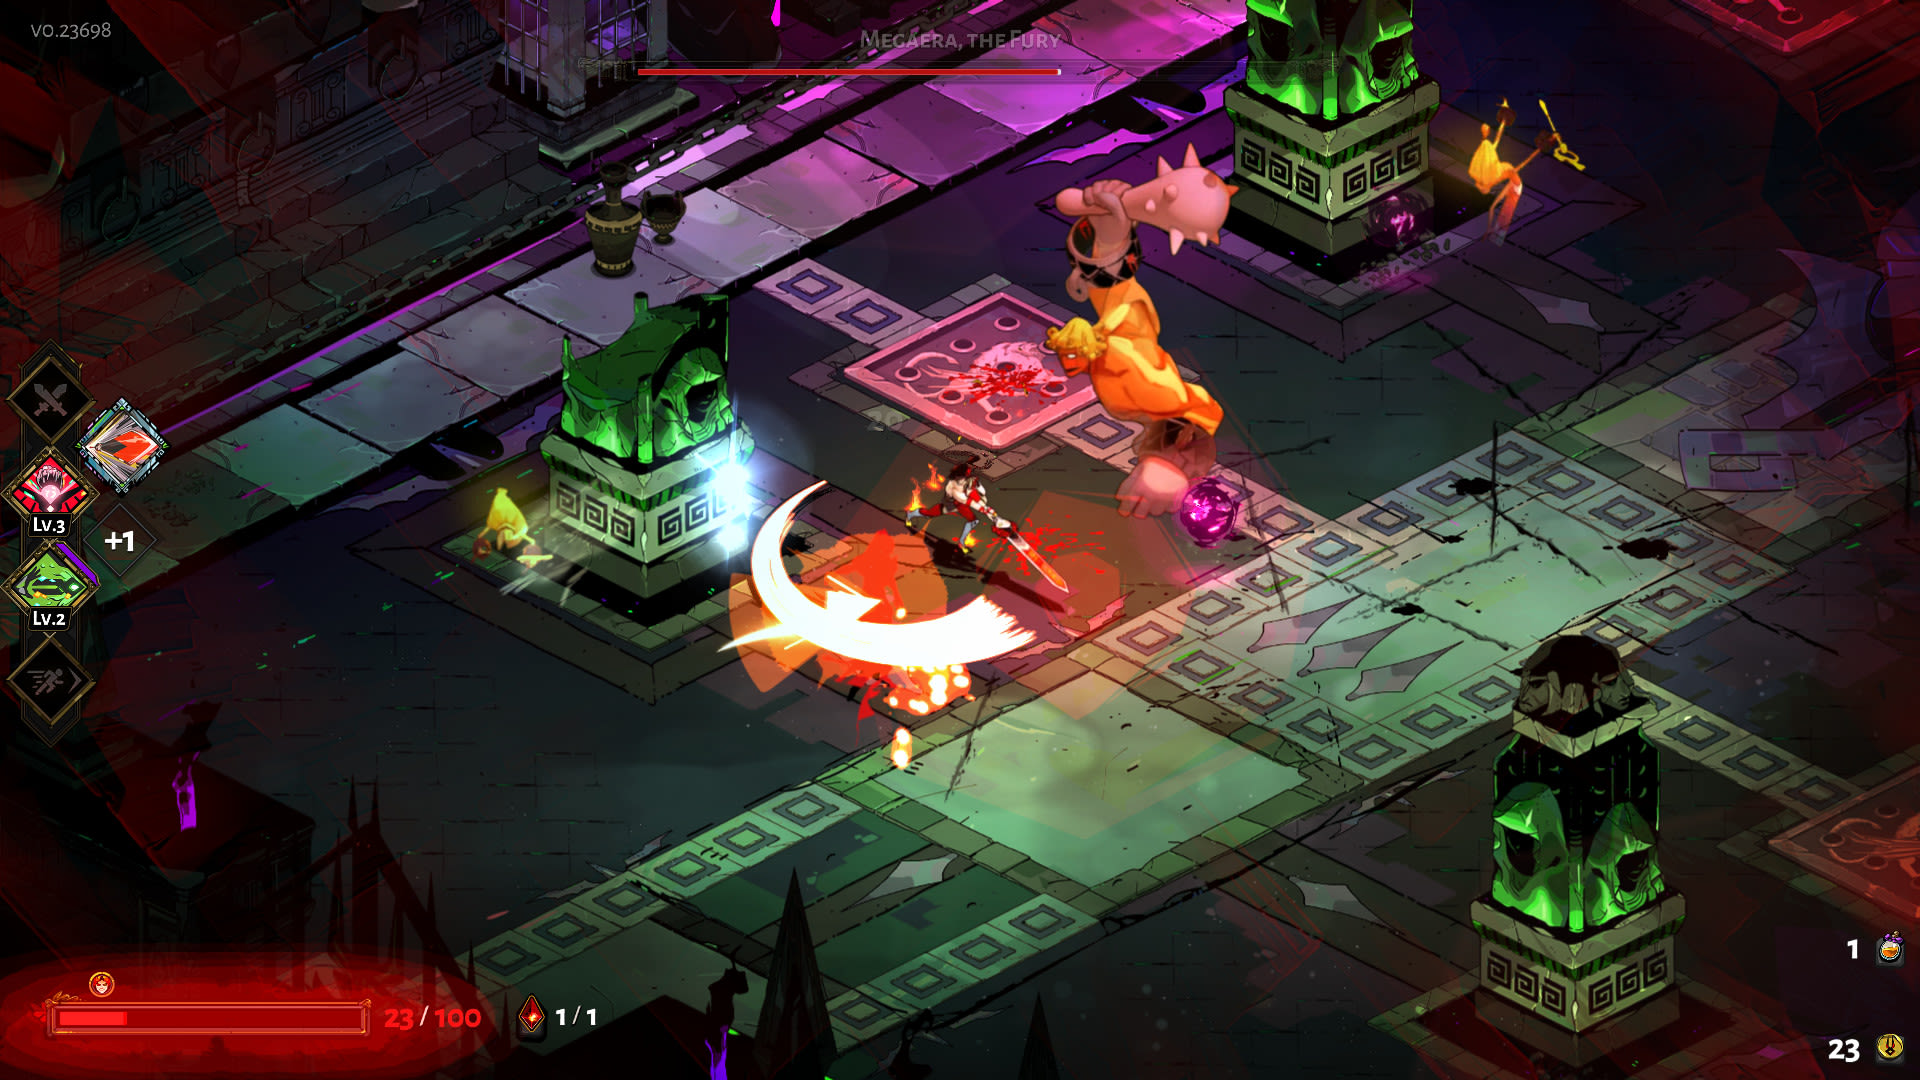 Captura de pantalla de Hades, que muestra al personaje del jugador Zagreus atacando a un grupo de enemigos